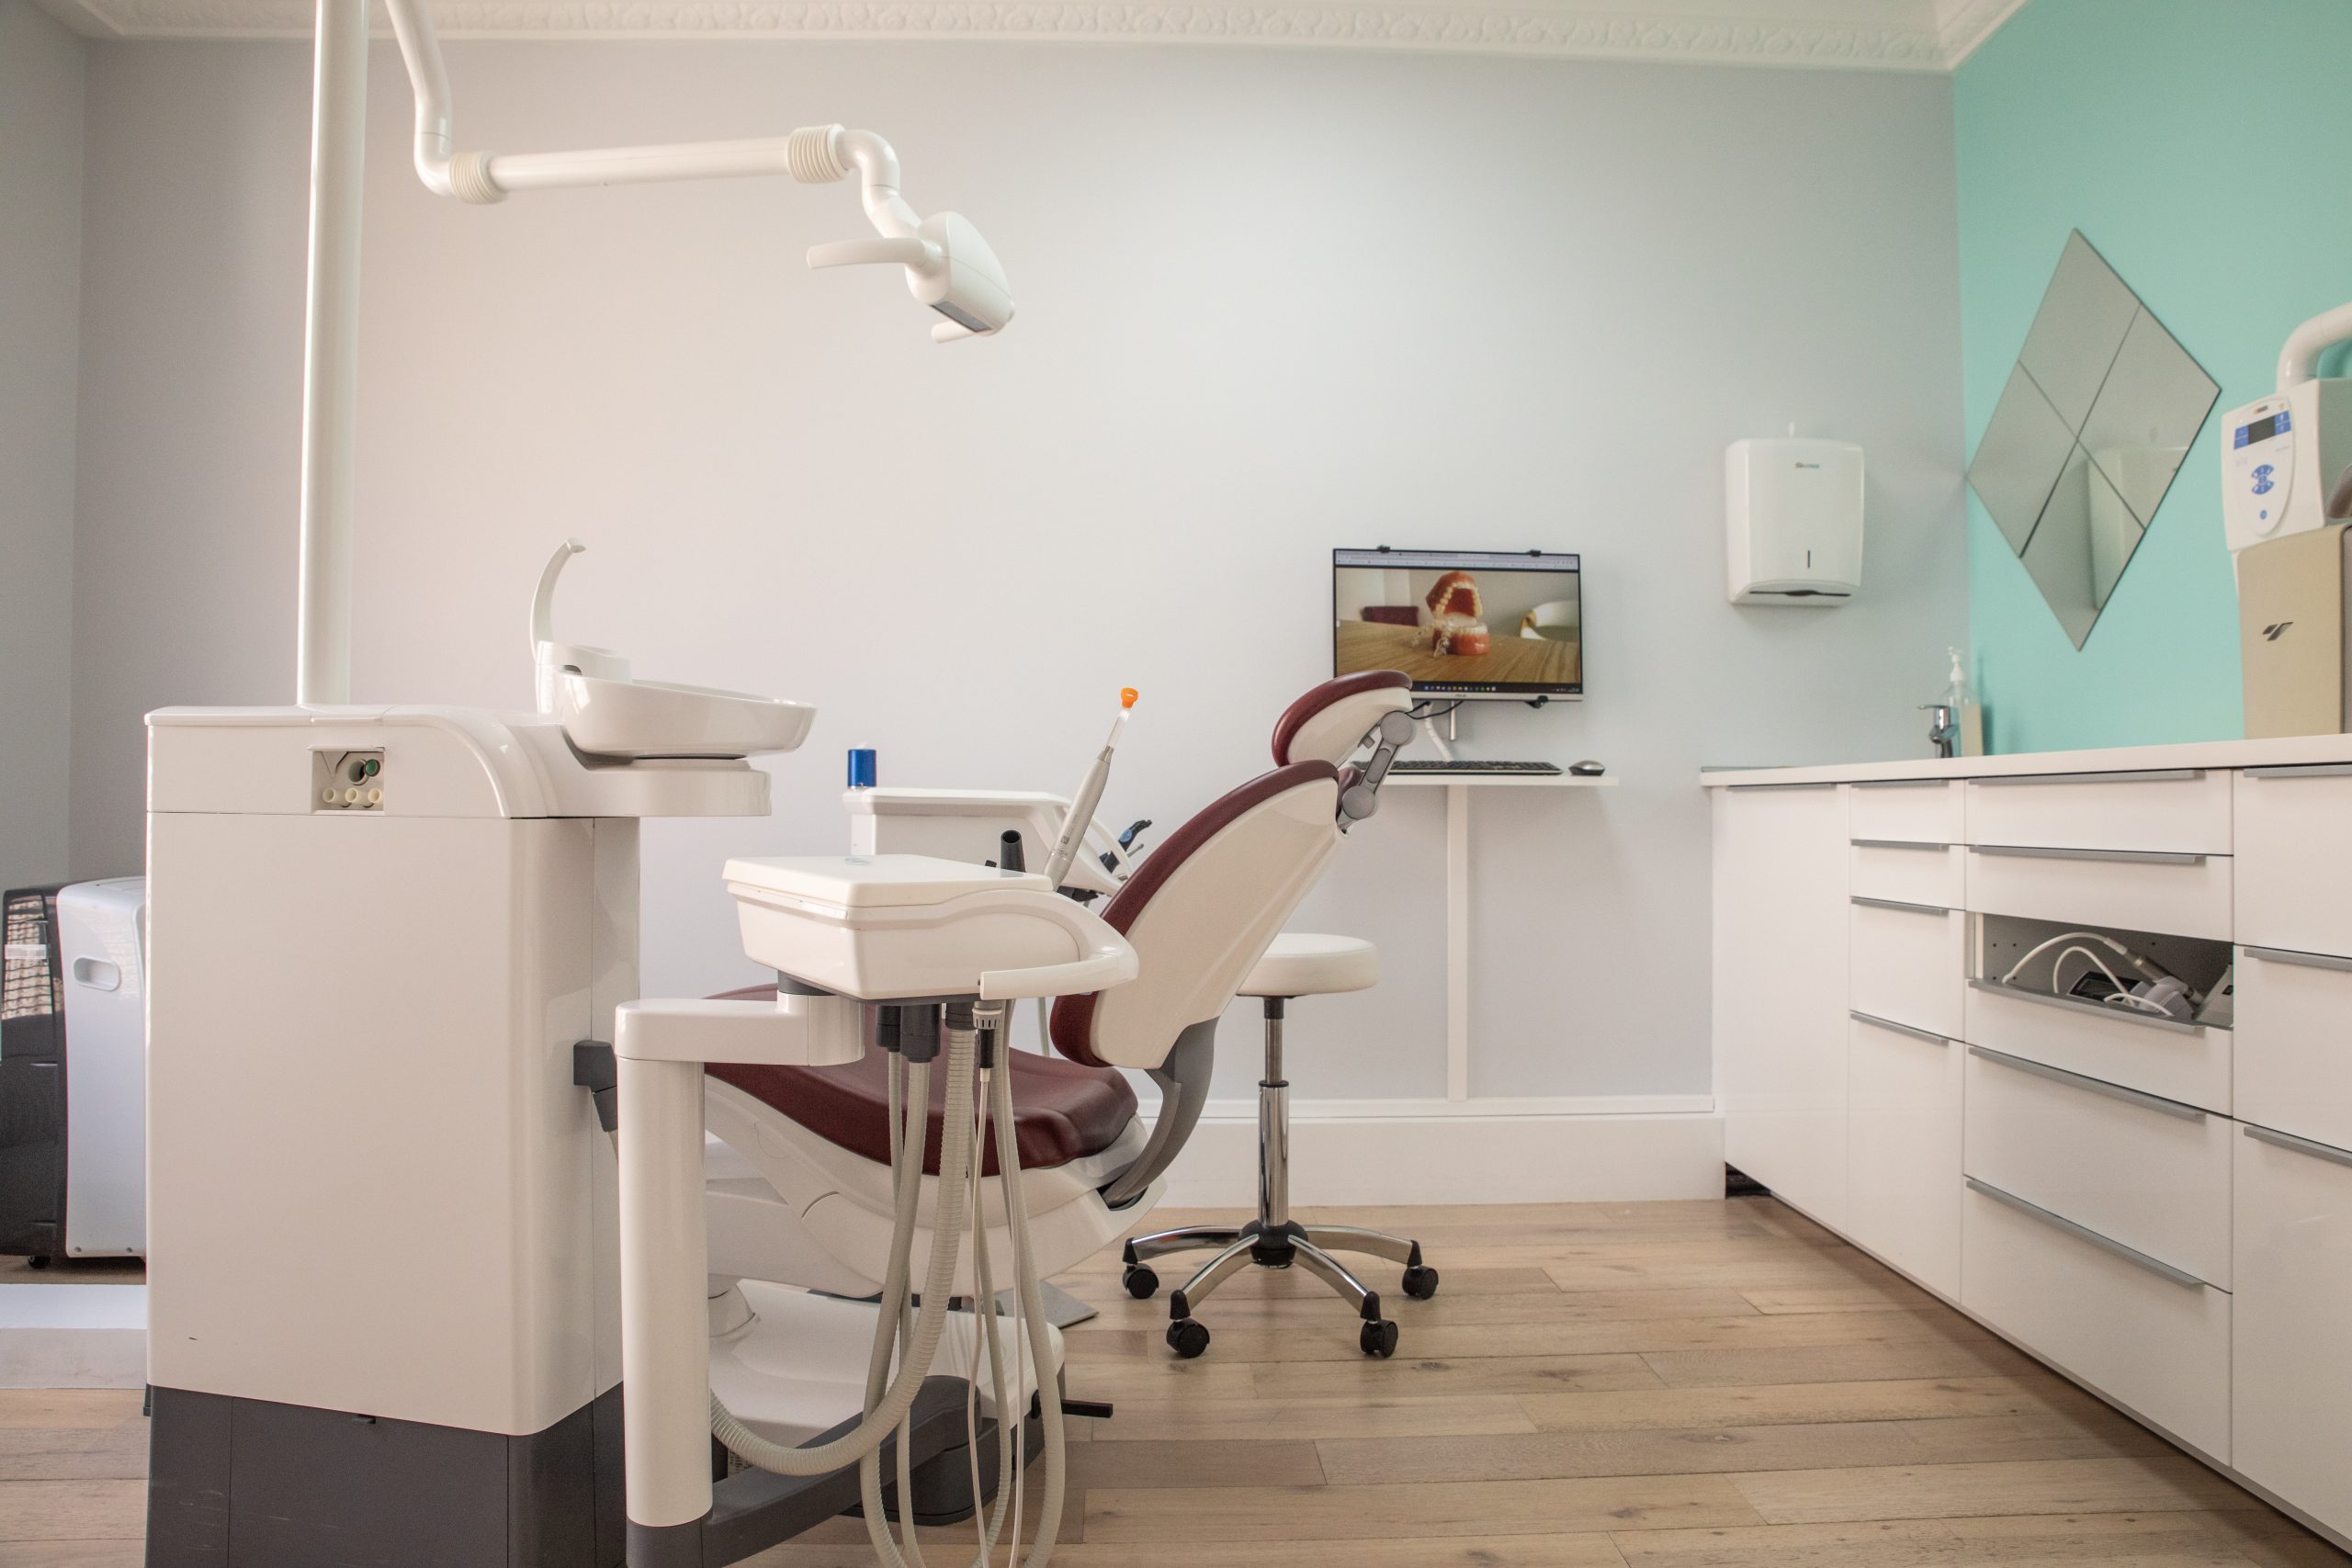 Appareils orthodontiques fixes : Orthodontie Garches - Cabinet 21 Libération